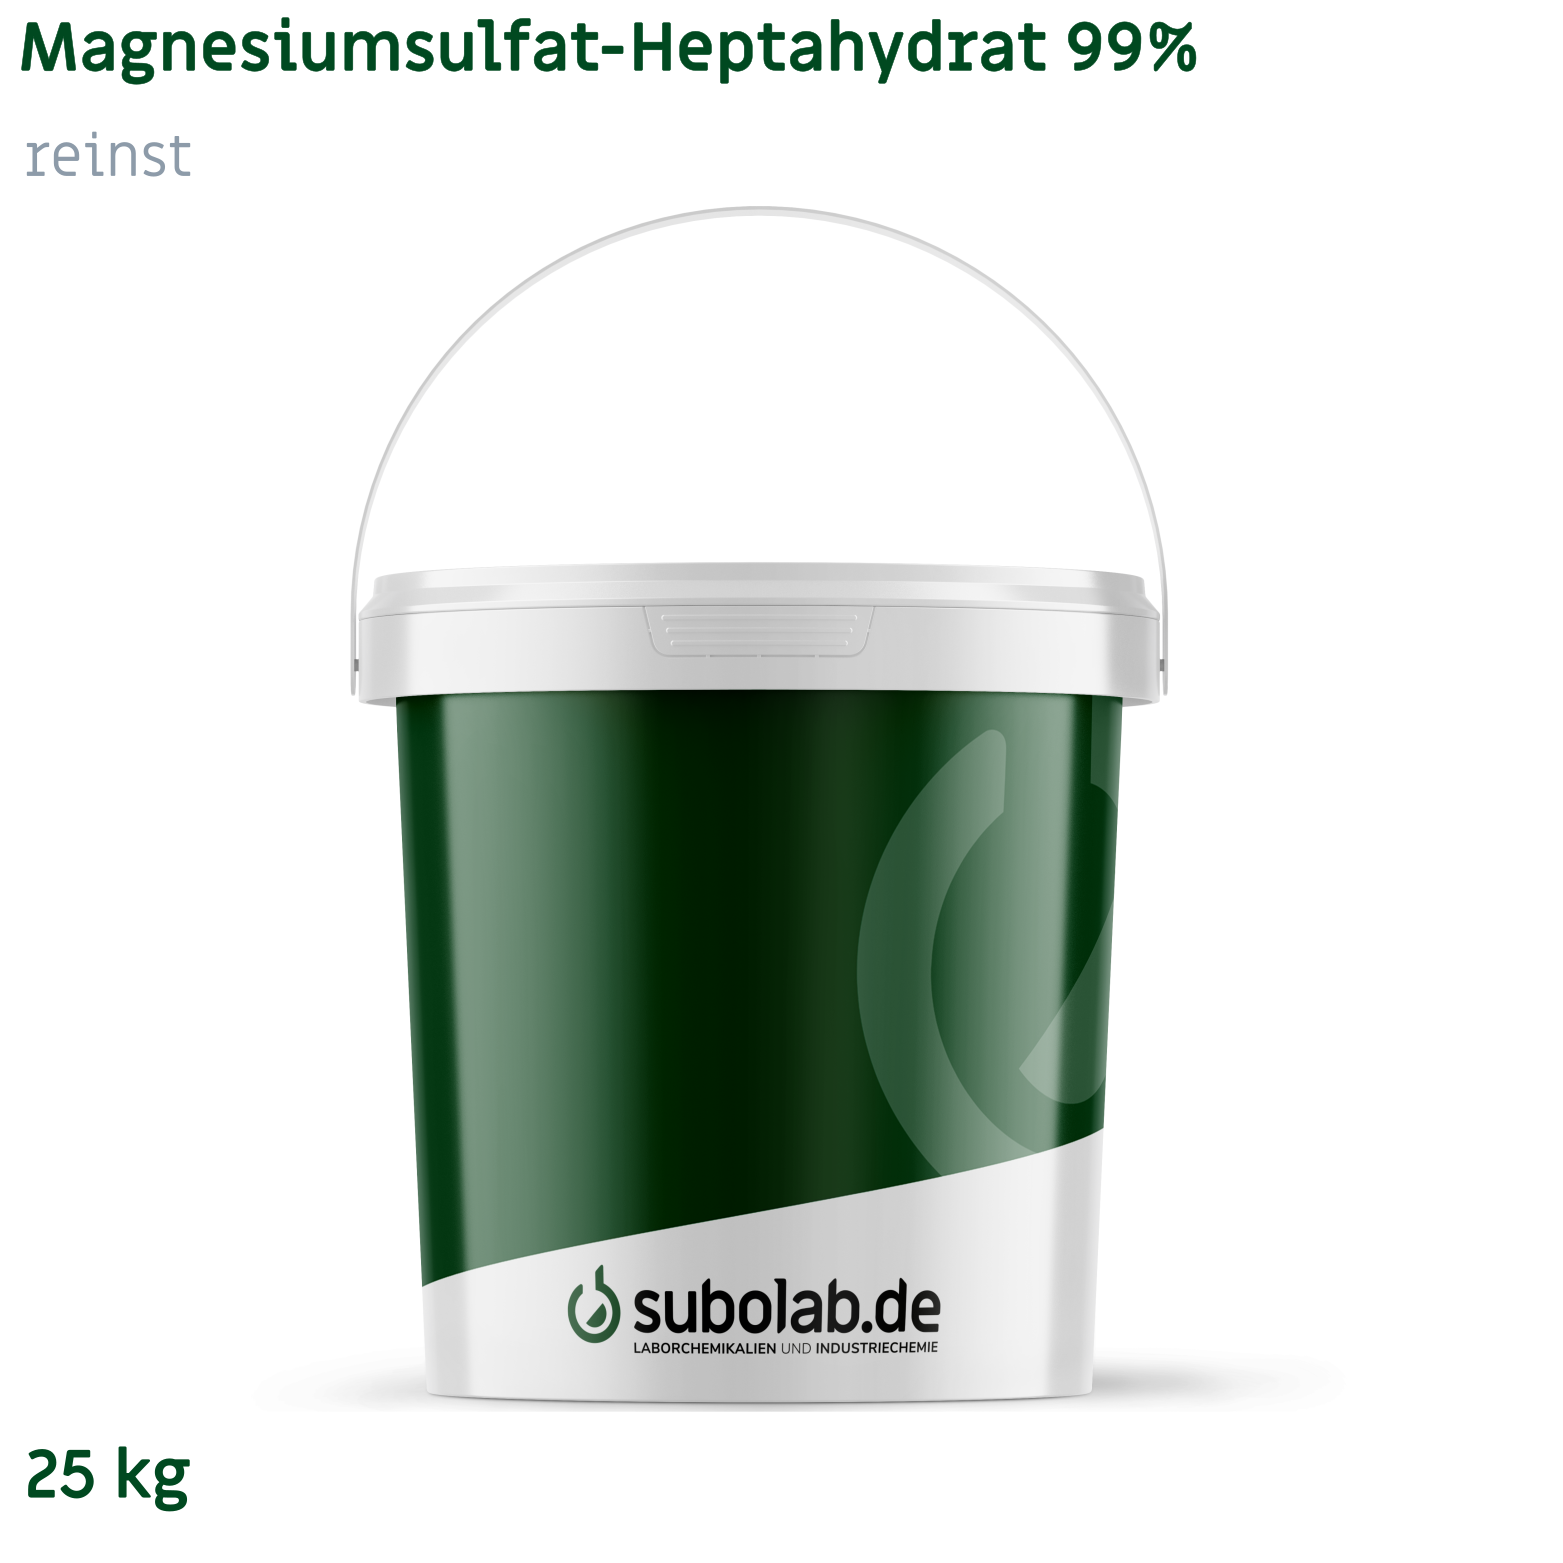 Bild von Magnesiumsulfat - Heptahydrat 99% reinst (25 kg)